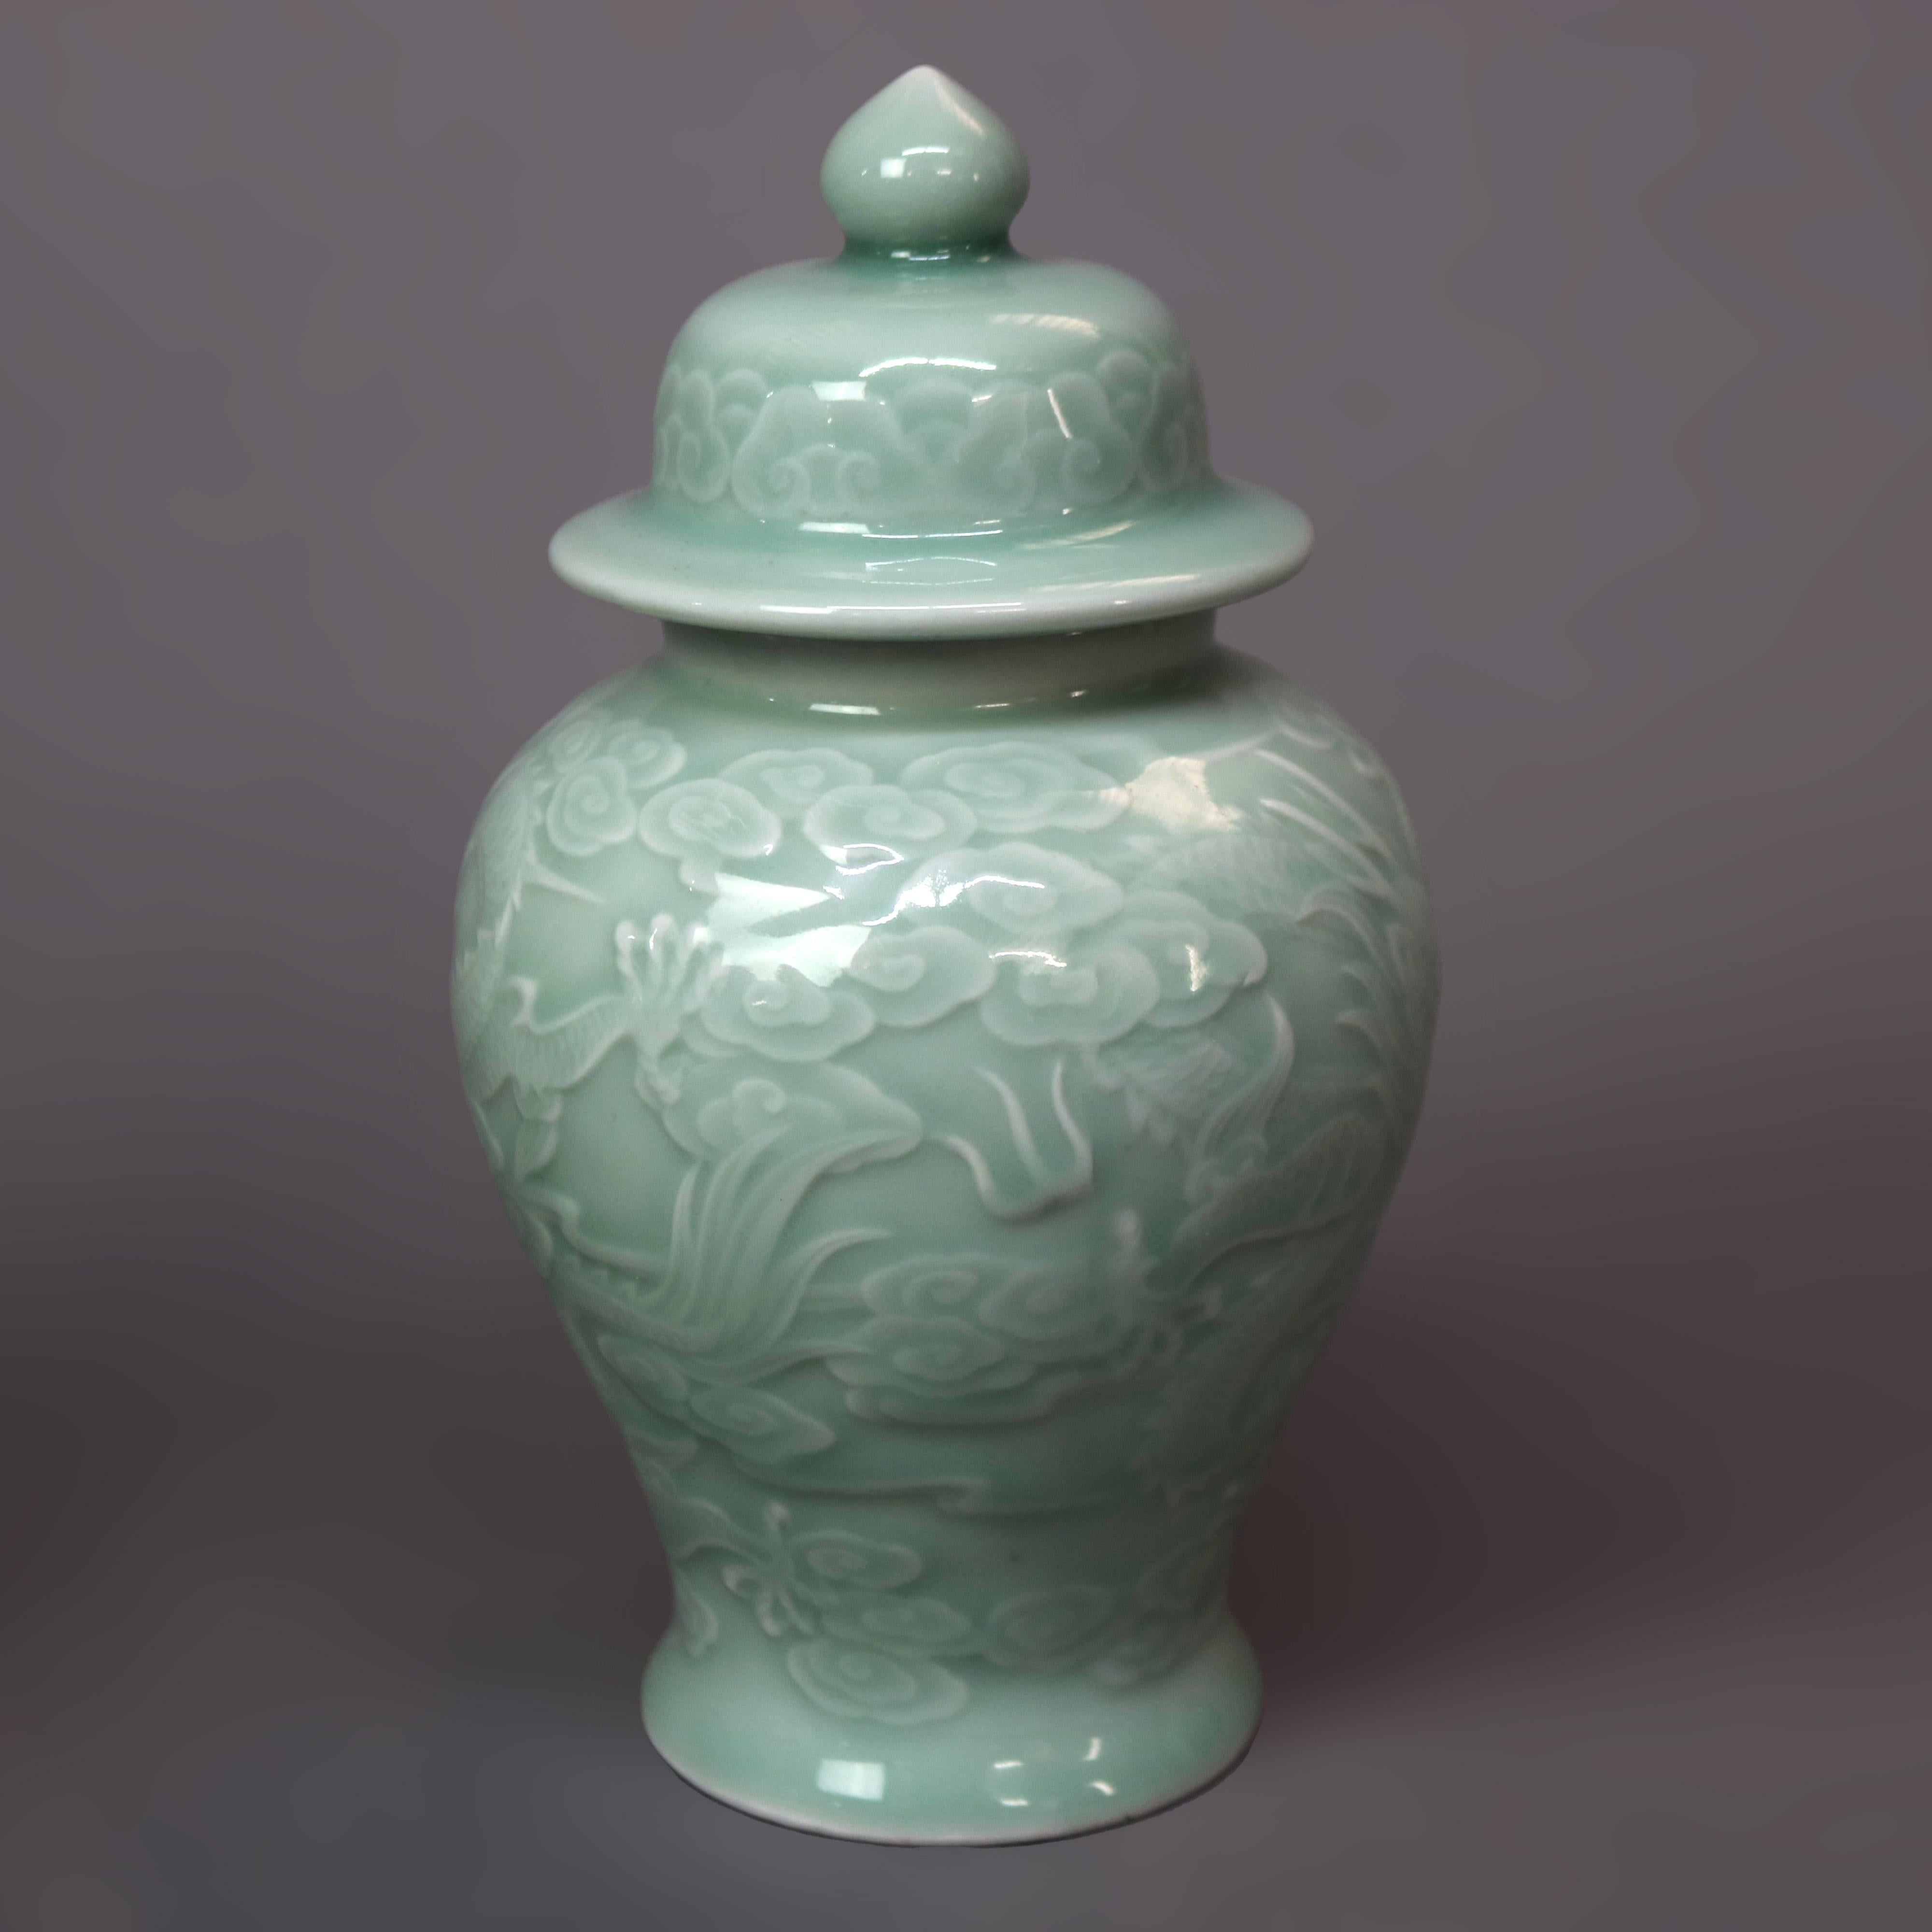 Ein Paar chinesische Porzellan-Urnen mit Deckel aus Seladon mit Drachenmotiv, 20. Jahrhundert.

Maße - 8,25